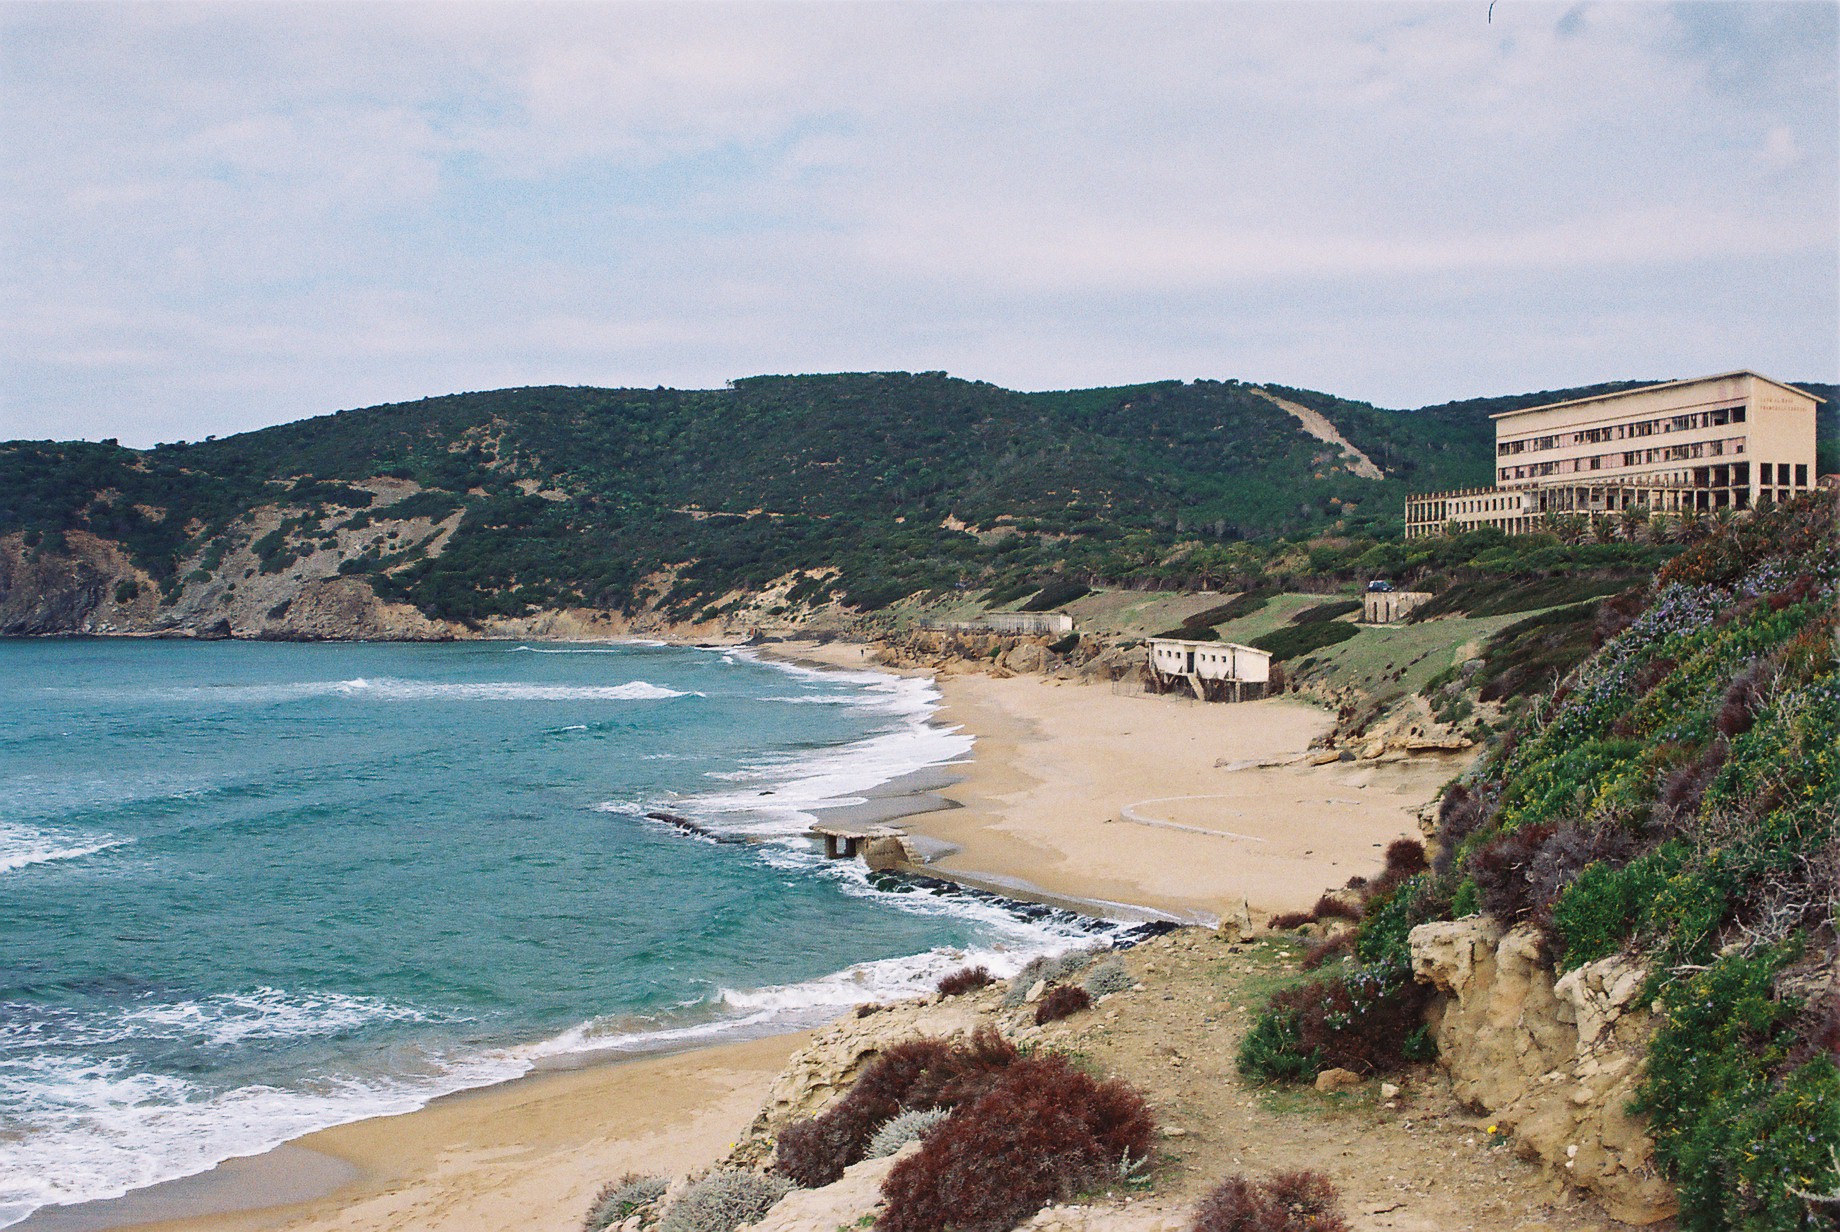 La spiaggia di Funtanazza